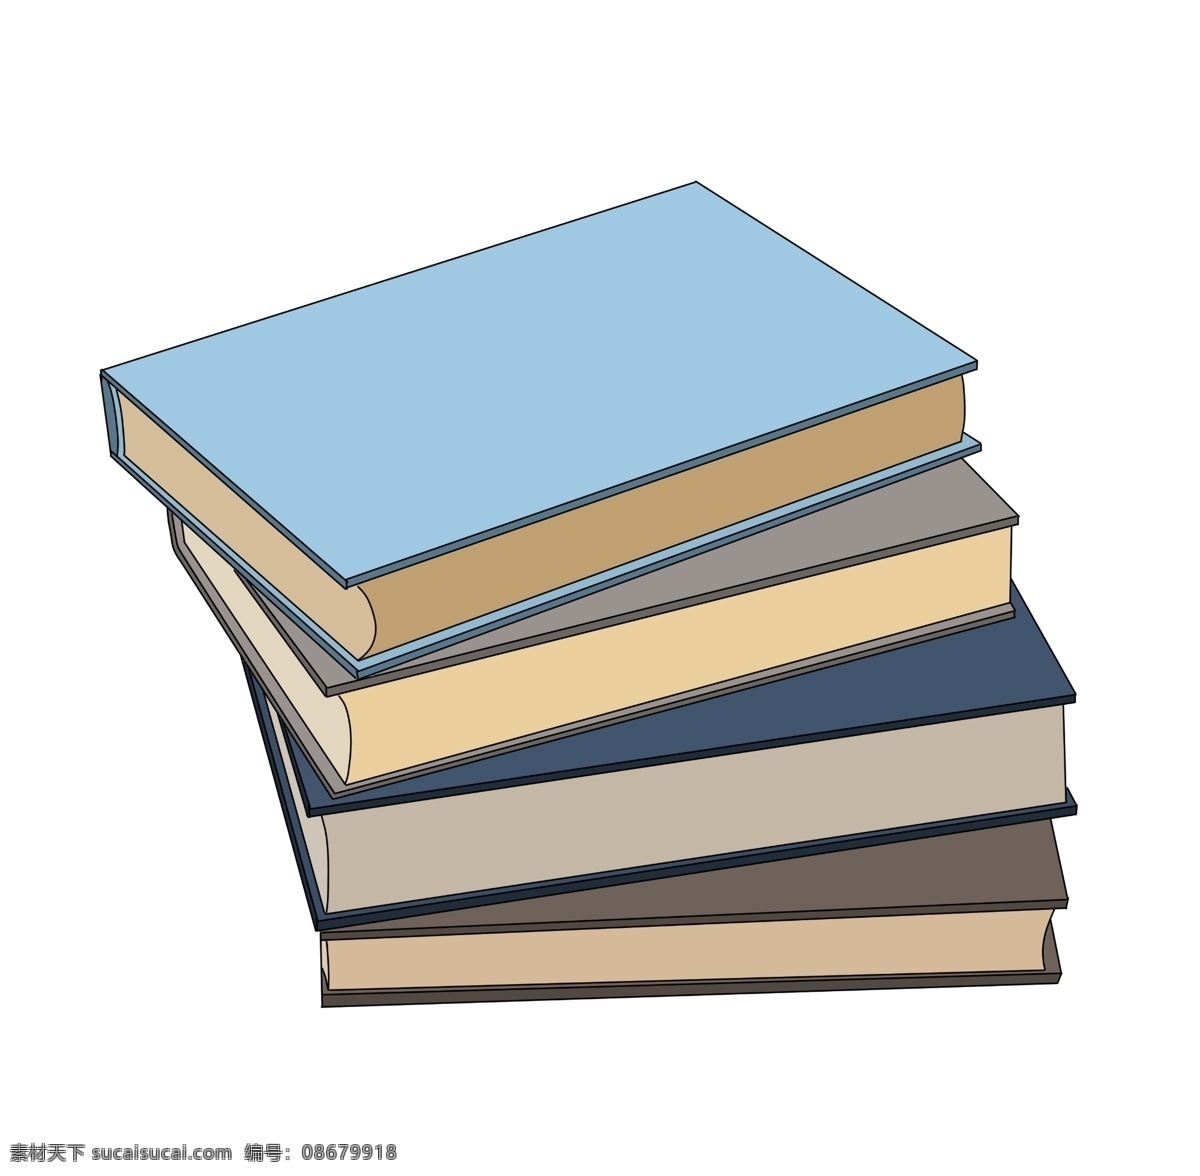 蓝色 书籍 卡通 插画 蓝色的书籍 卡通插画 书籍插画 书本 课本 书 书皮 书页 看书 好看的书籍